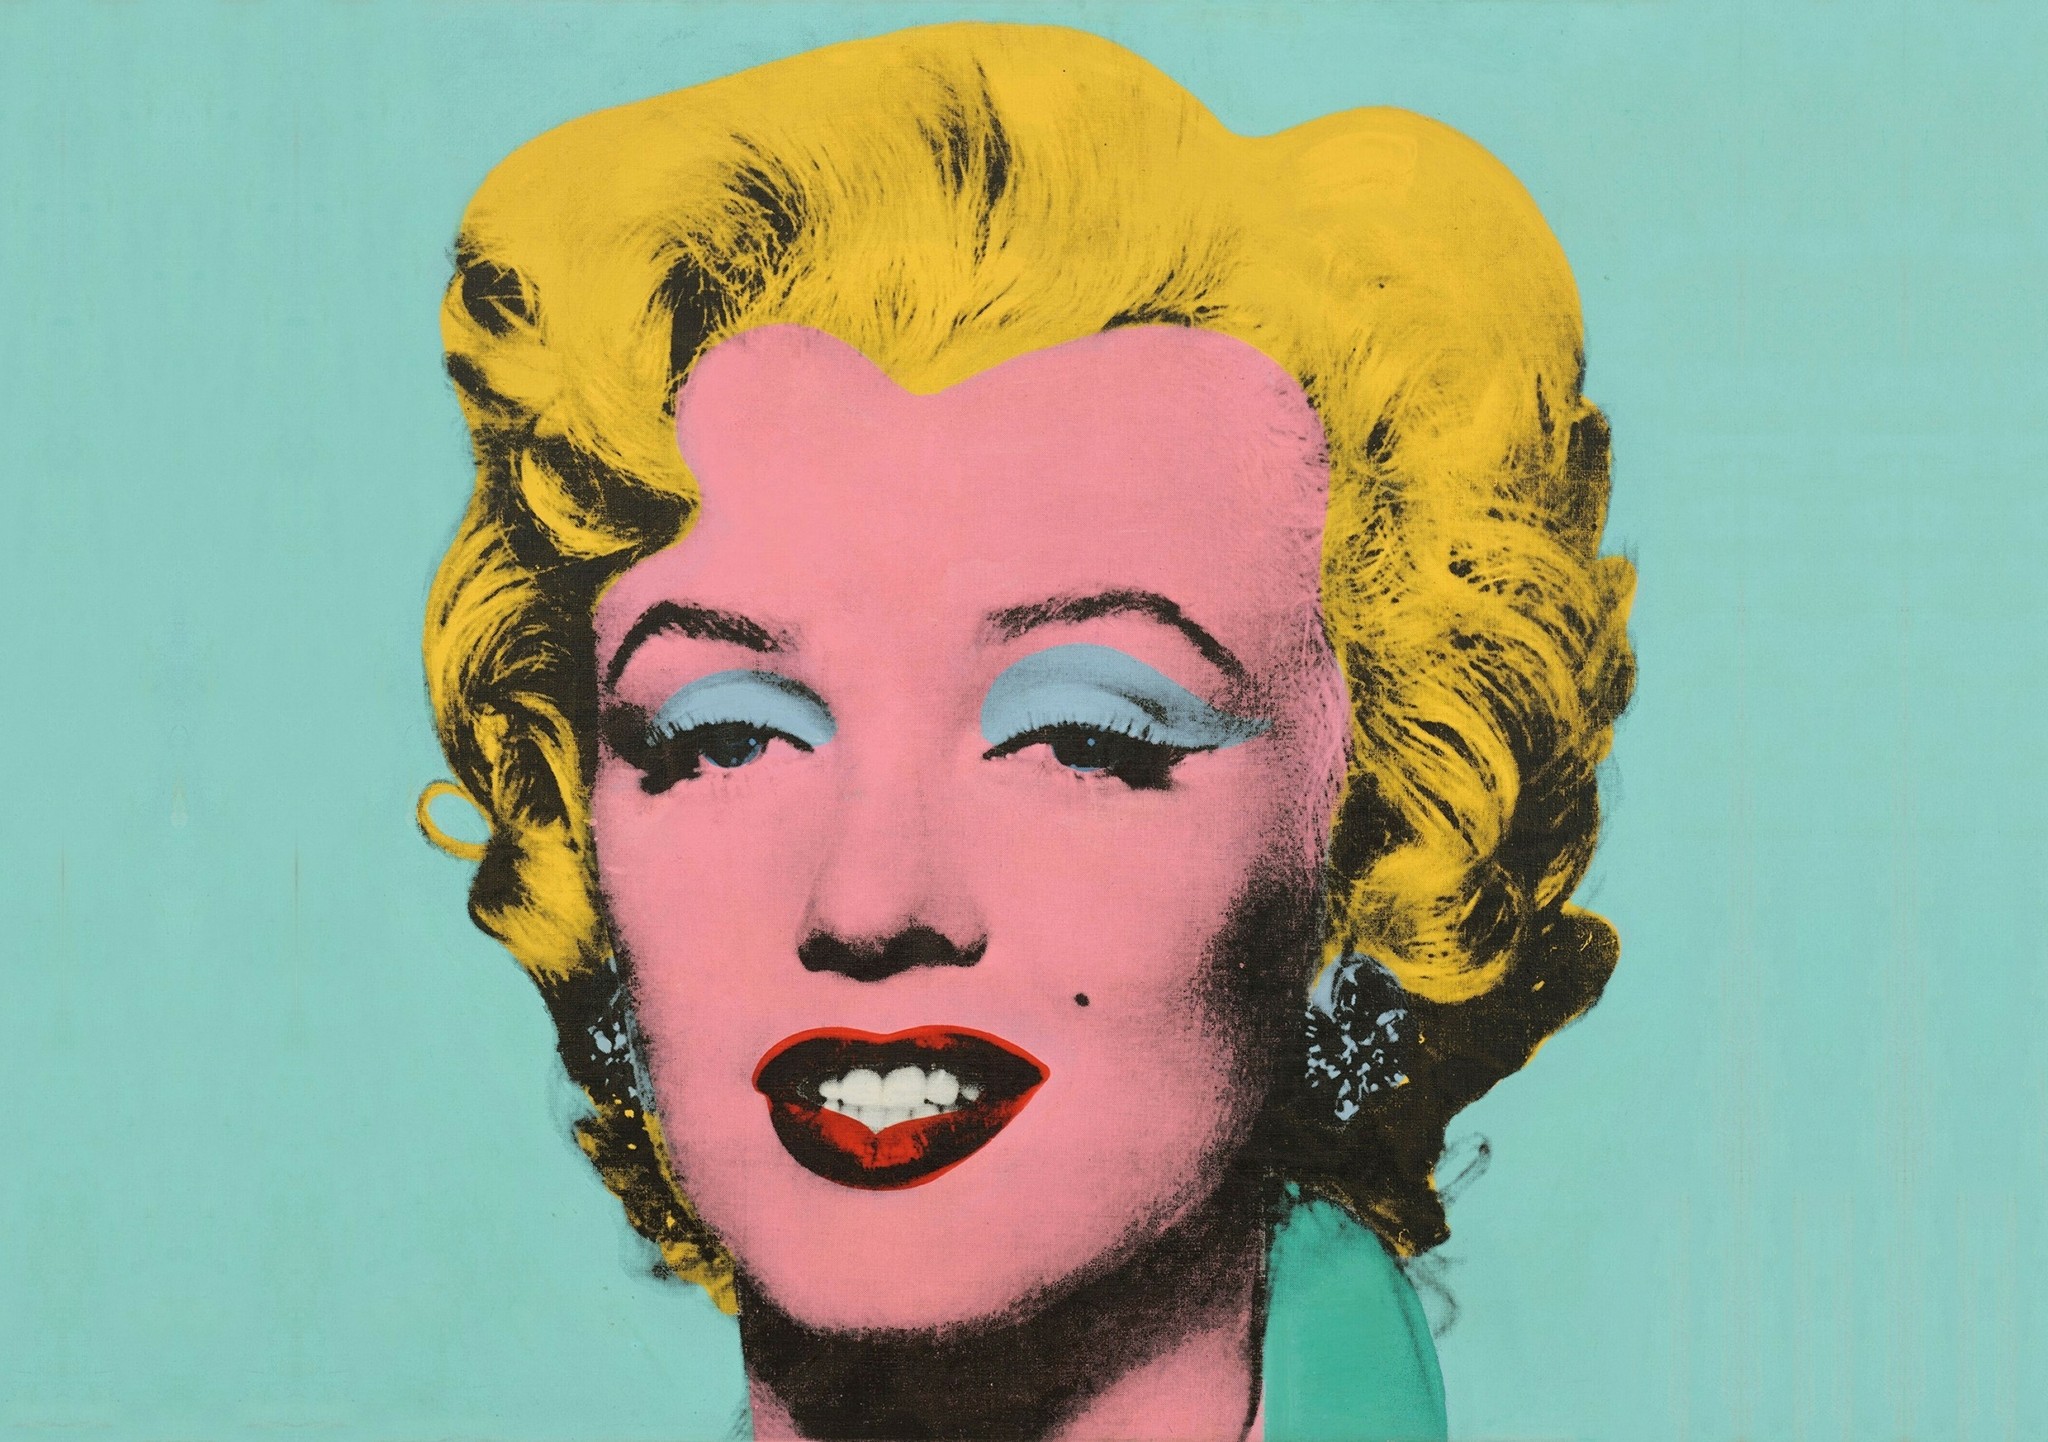 Γιατί είναι σπουδαίος ο πίνακας “Marilyn” των 195 εκατομμυρίων δολαρίων